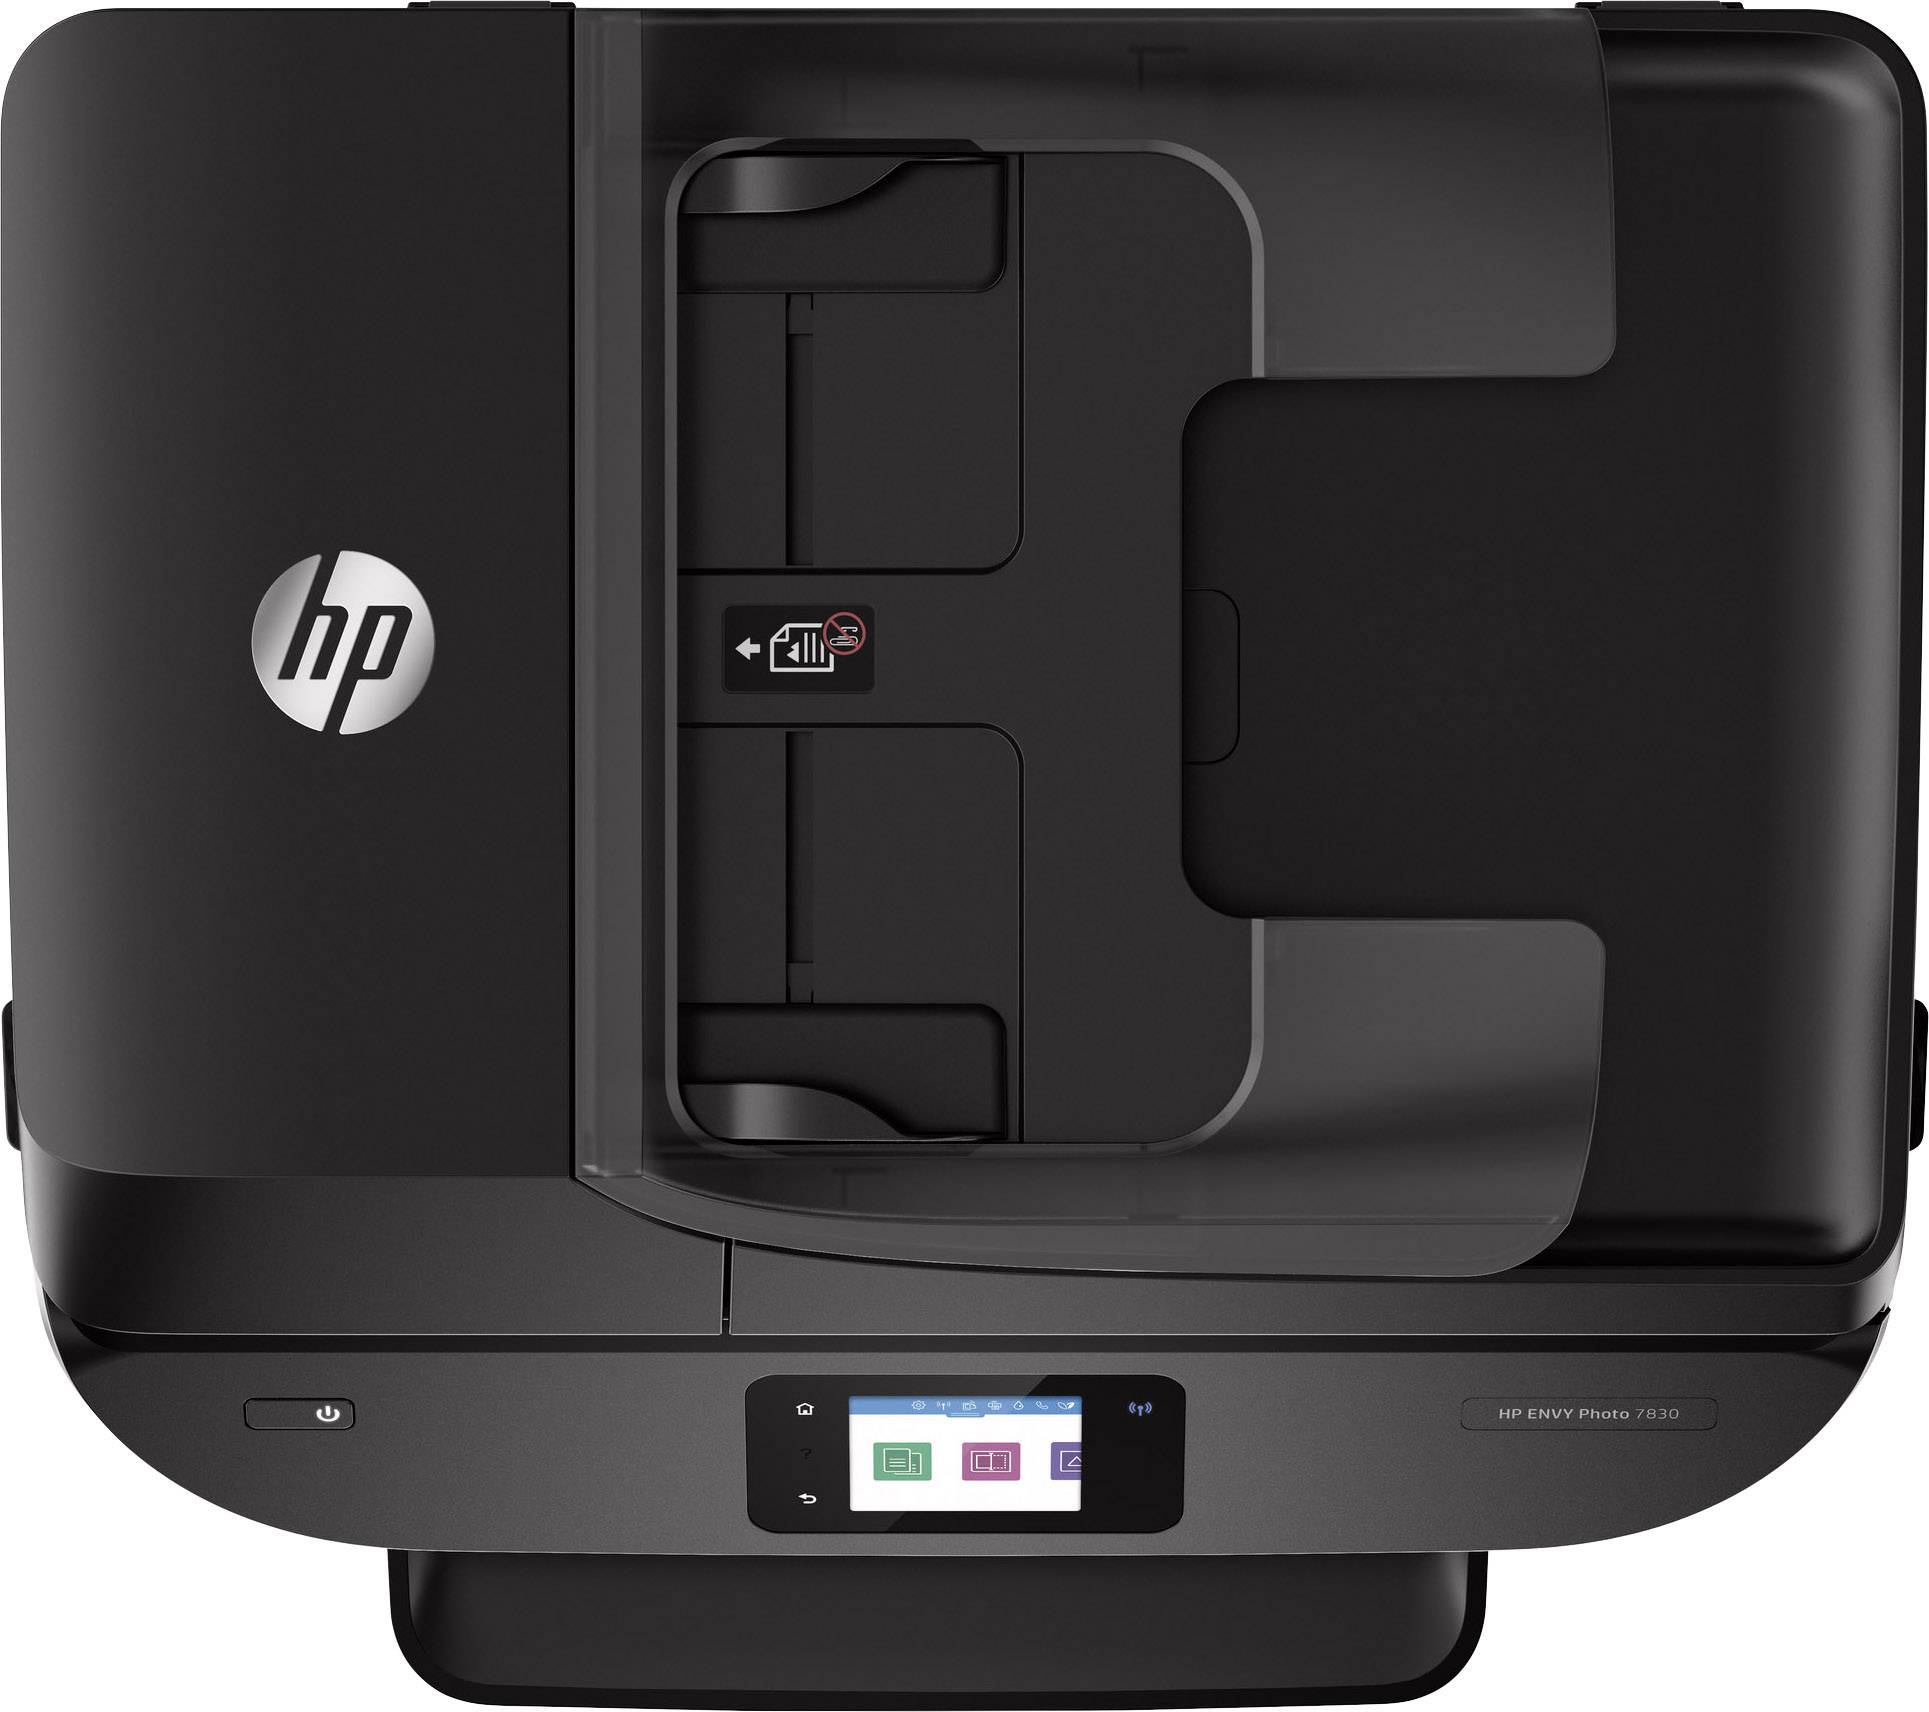 HP Envy Photo 7830 Impresora multifunción inalámbrica Color Negro Tinta, Wi-Fi, copiar, escanear, alimentador automático de Documentos, 1200 x 1200 PPP, Incluido 4 Meses de HP Instant Ink